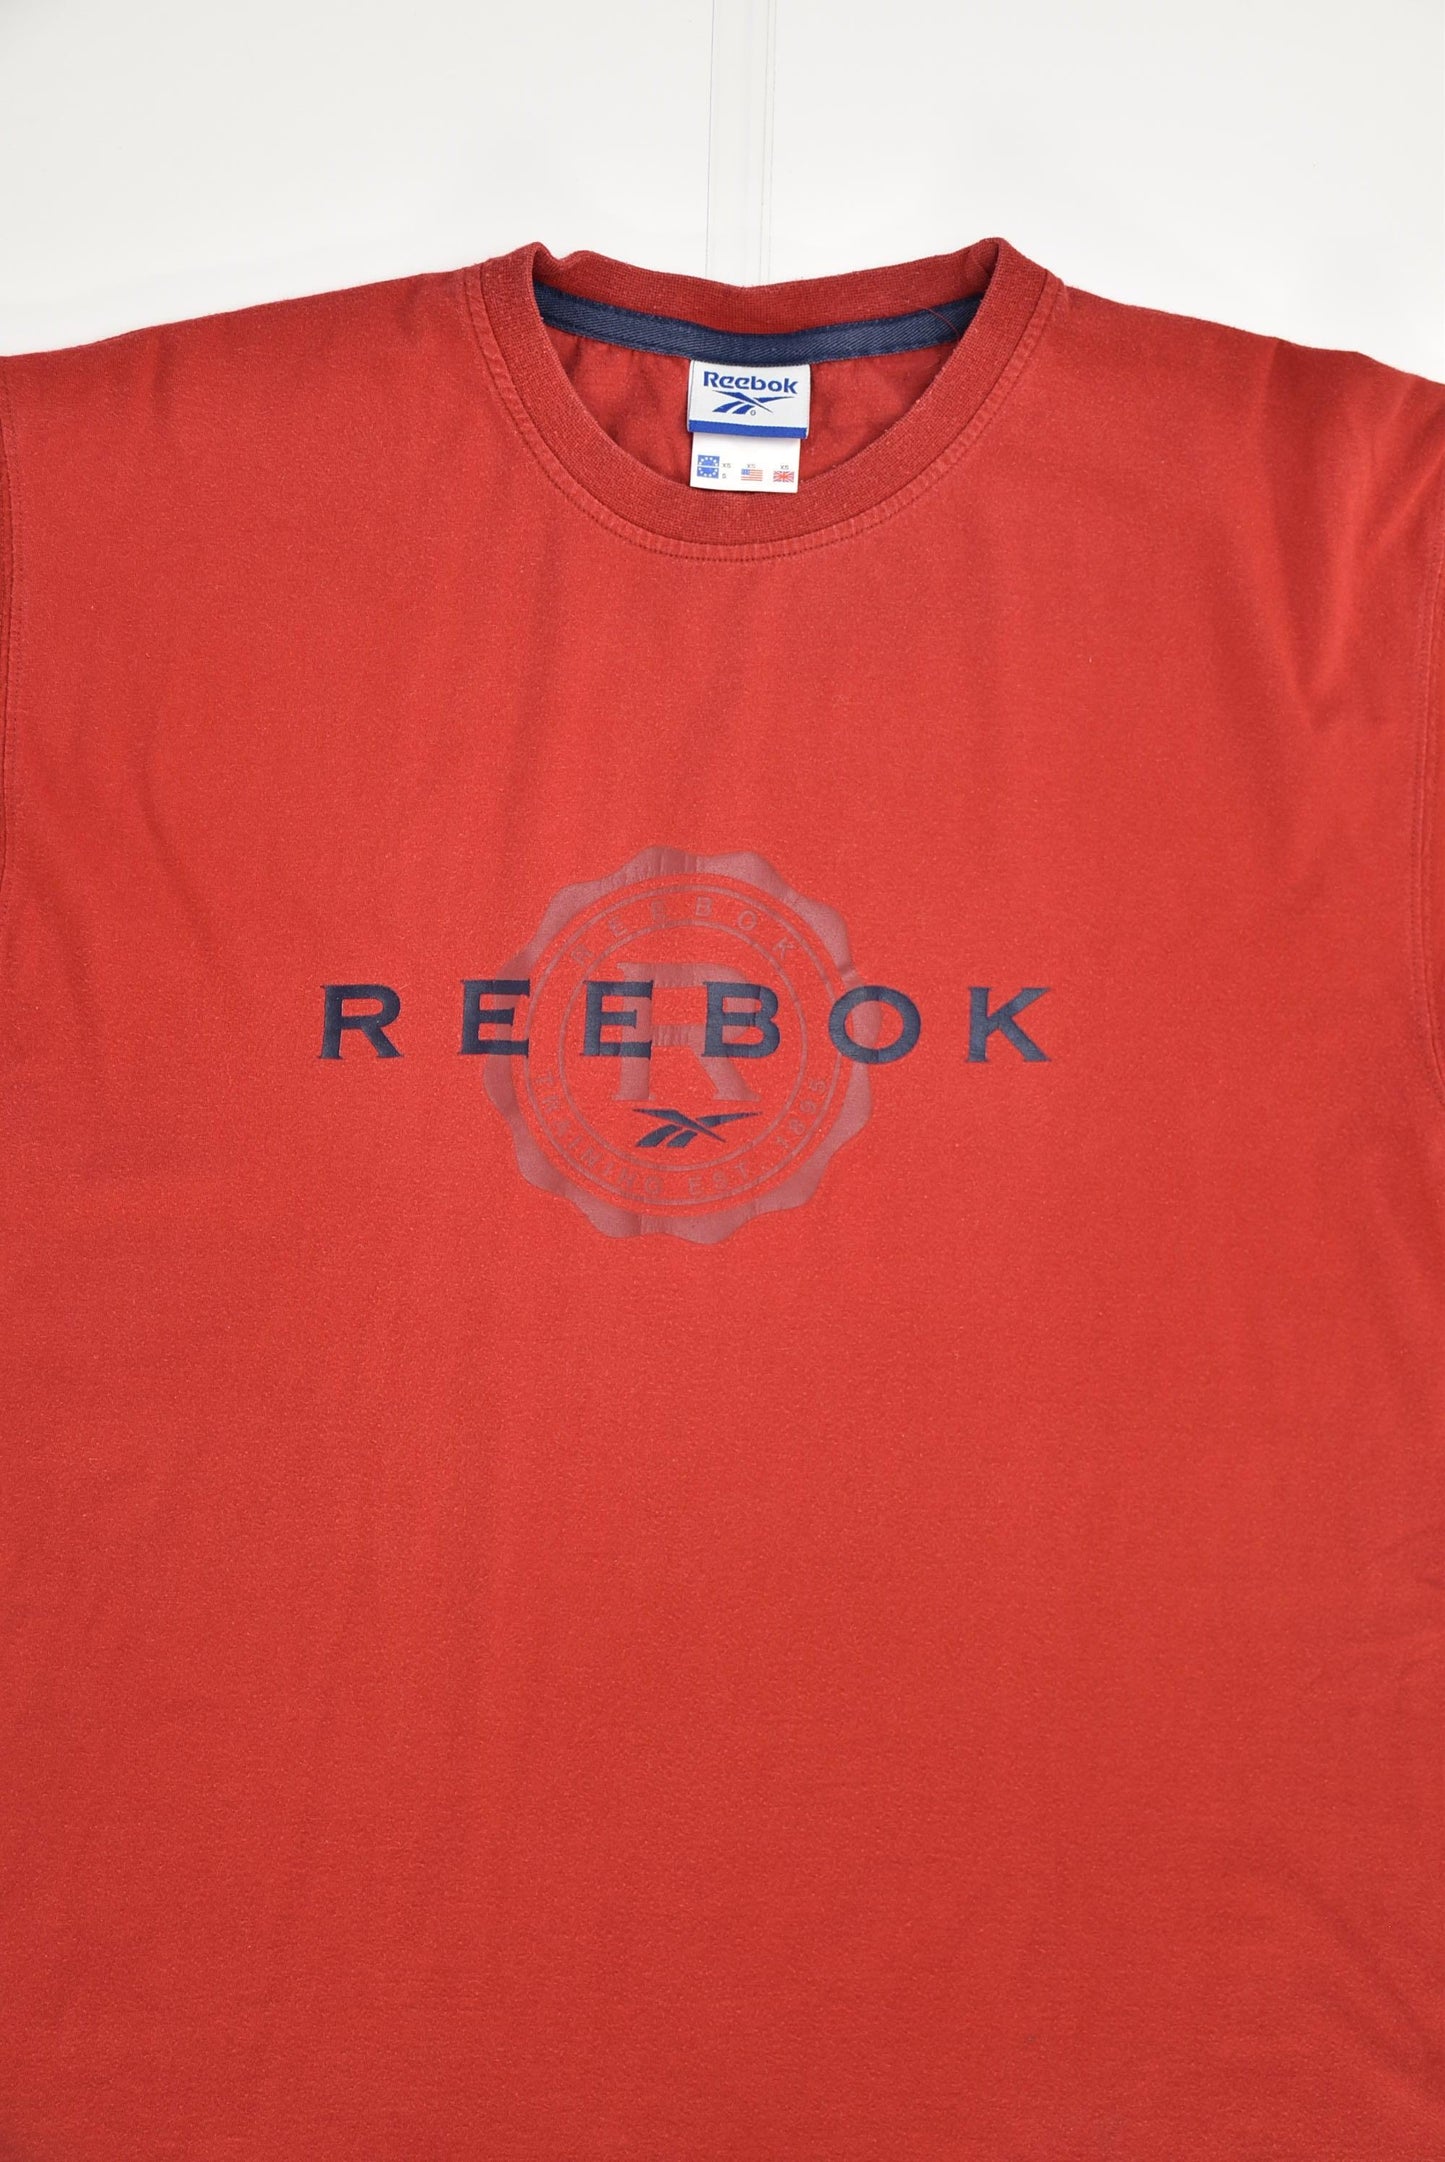 Reebok T-shirt (M) - Slayyy Vintage